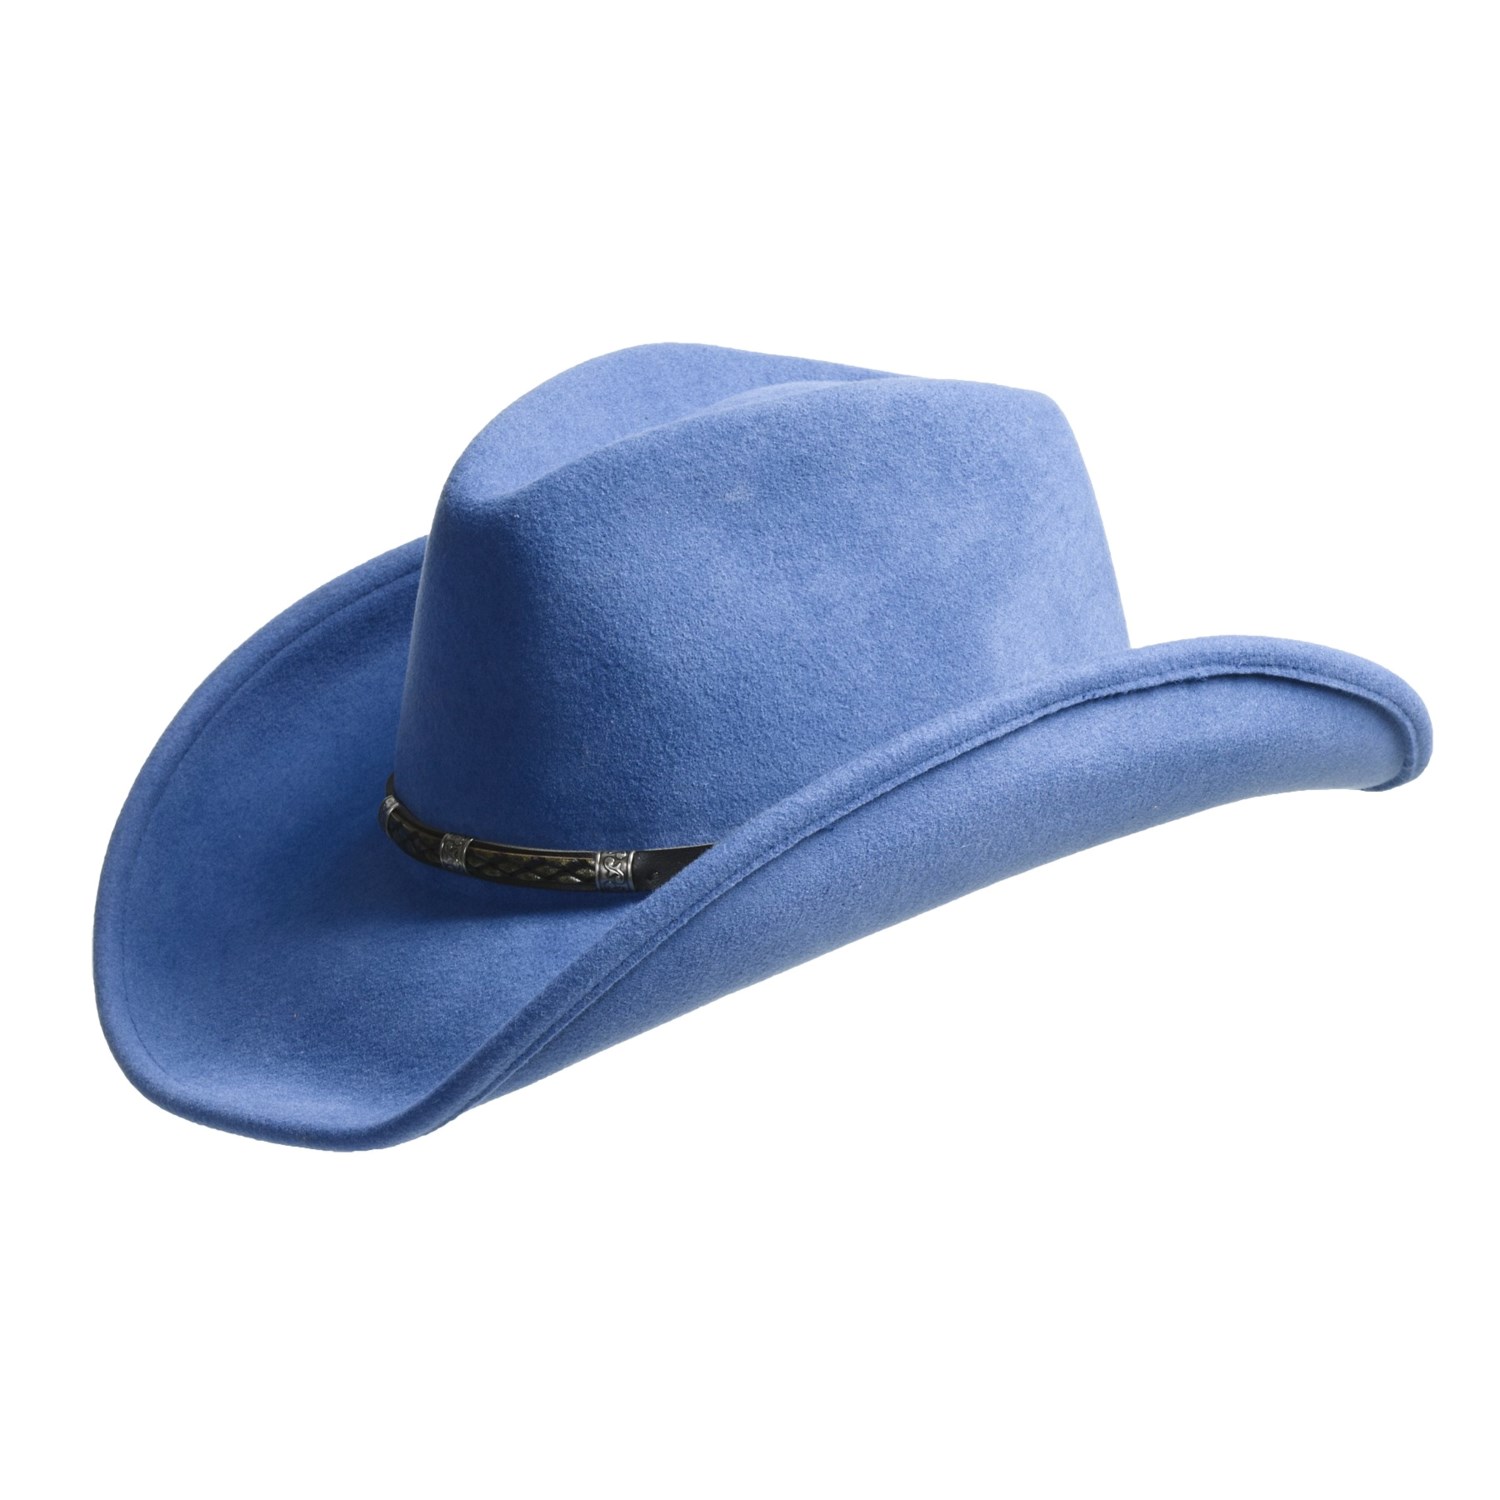 Bailey Cowboy Hats